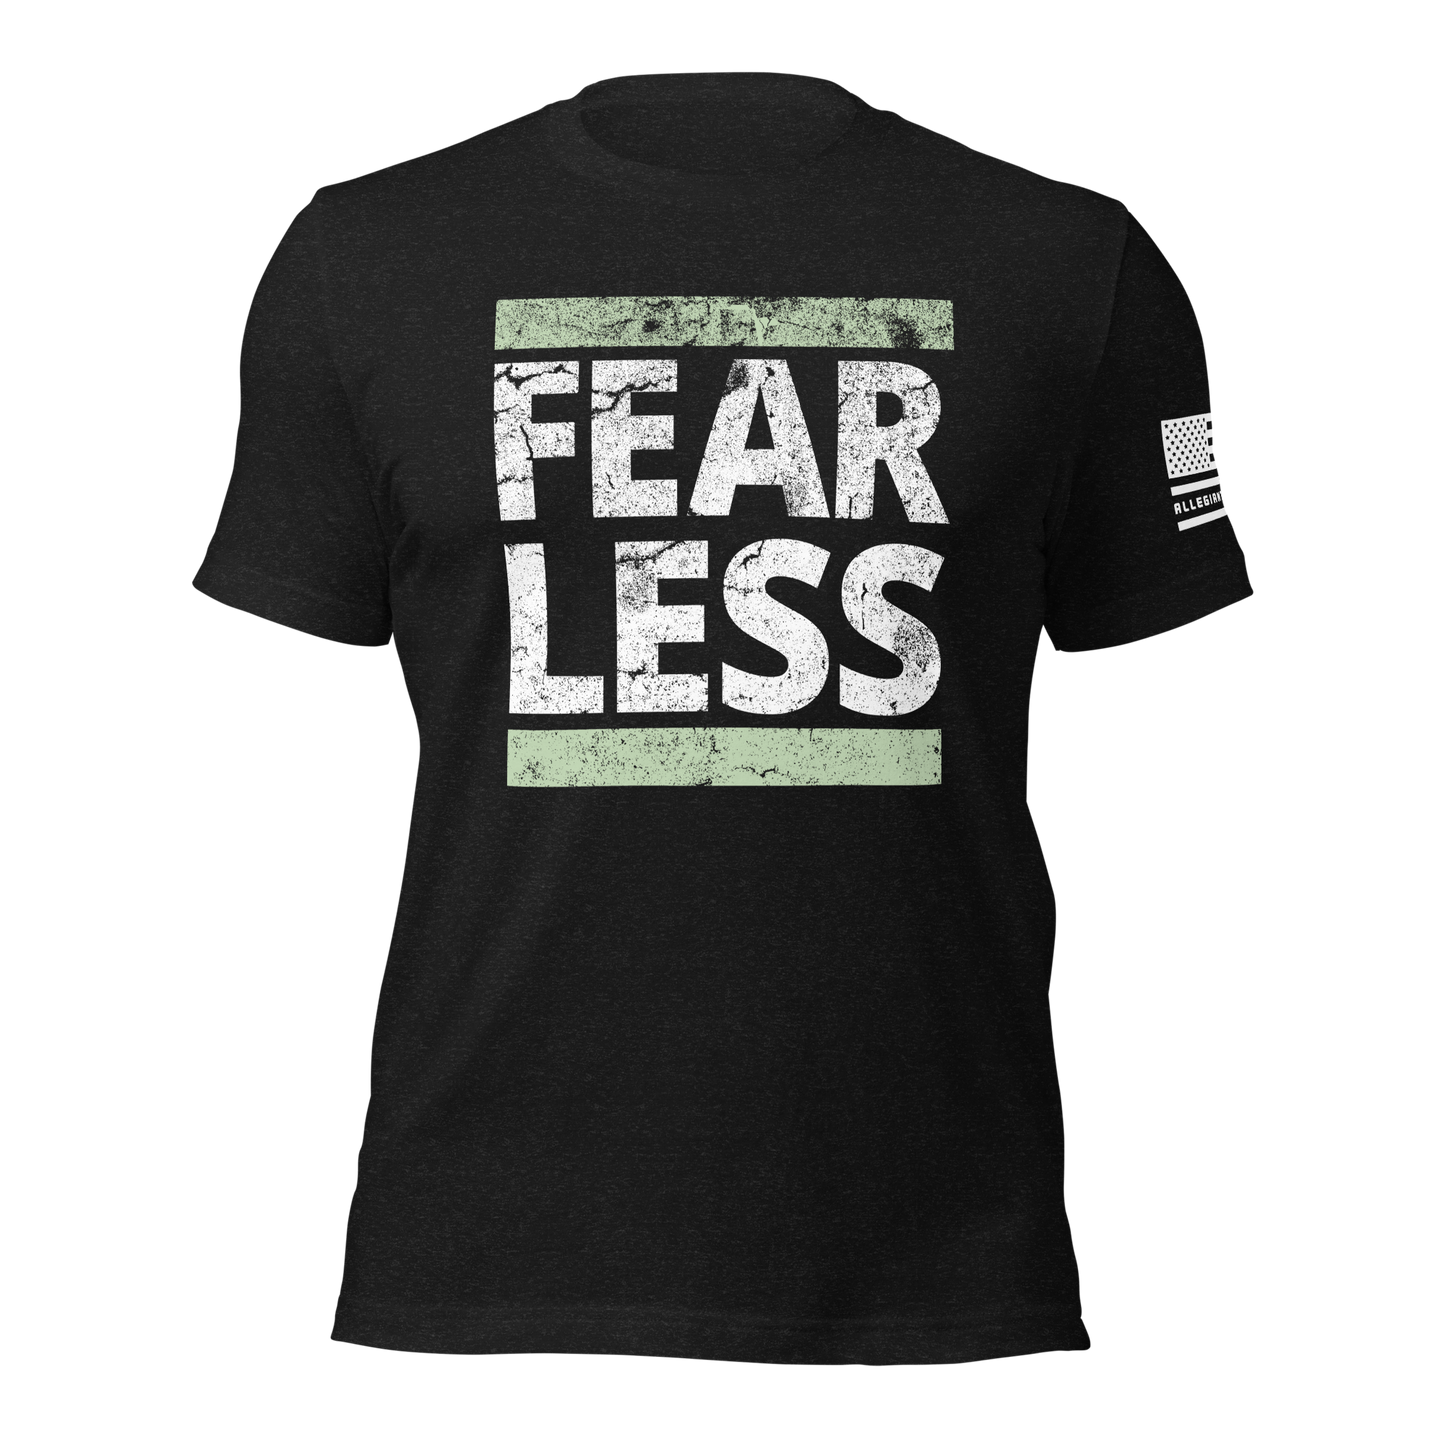 Fearless T-Shirt